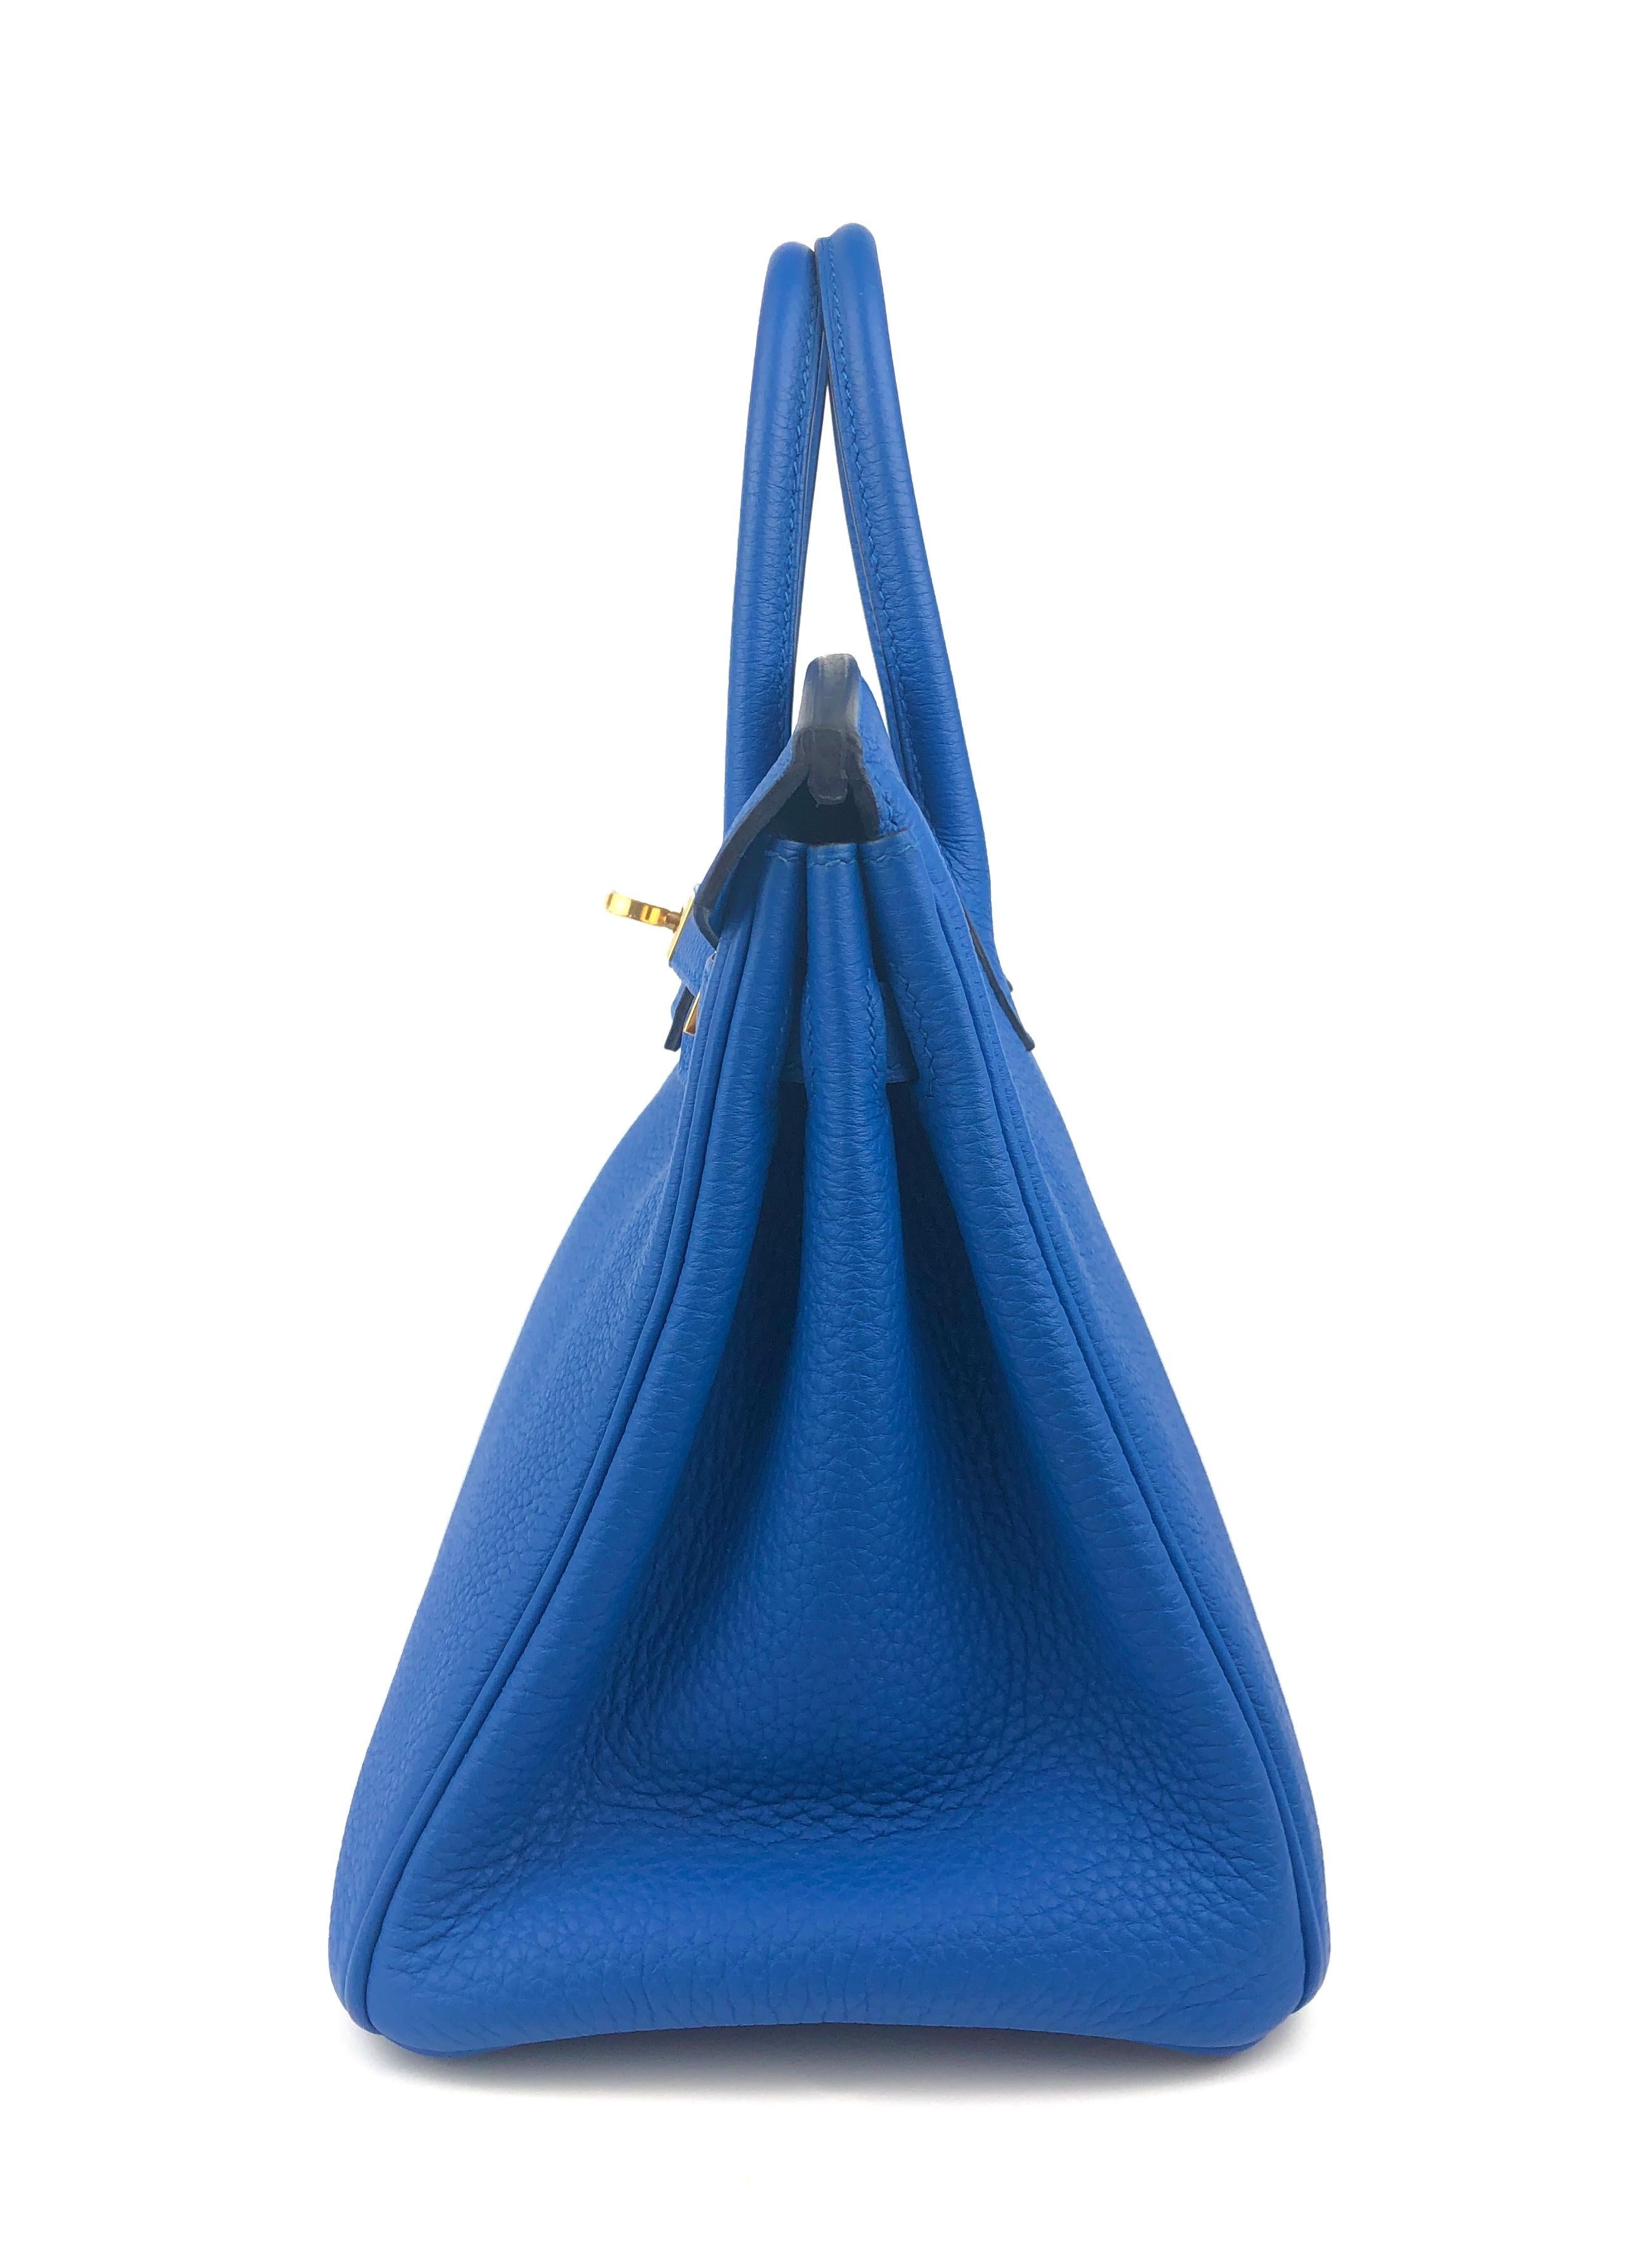 Hermes Birkin 25 Blue Zellige Togo Leather Handbag Bag Gold Hardware RARE 2